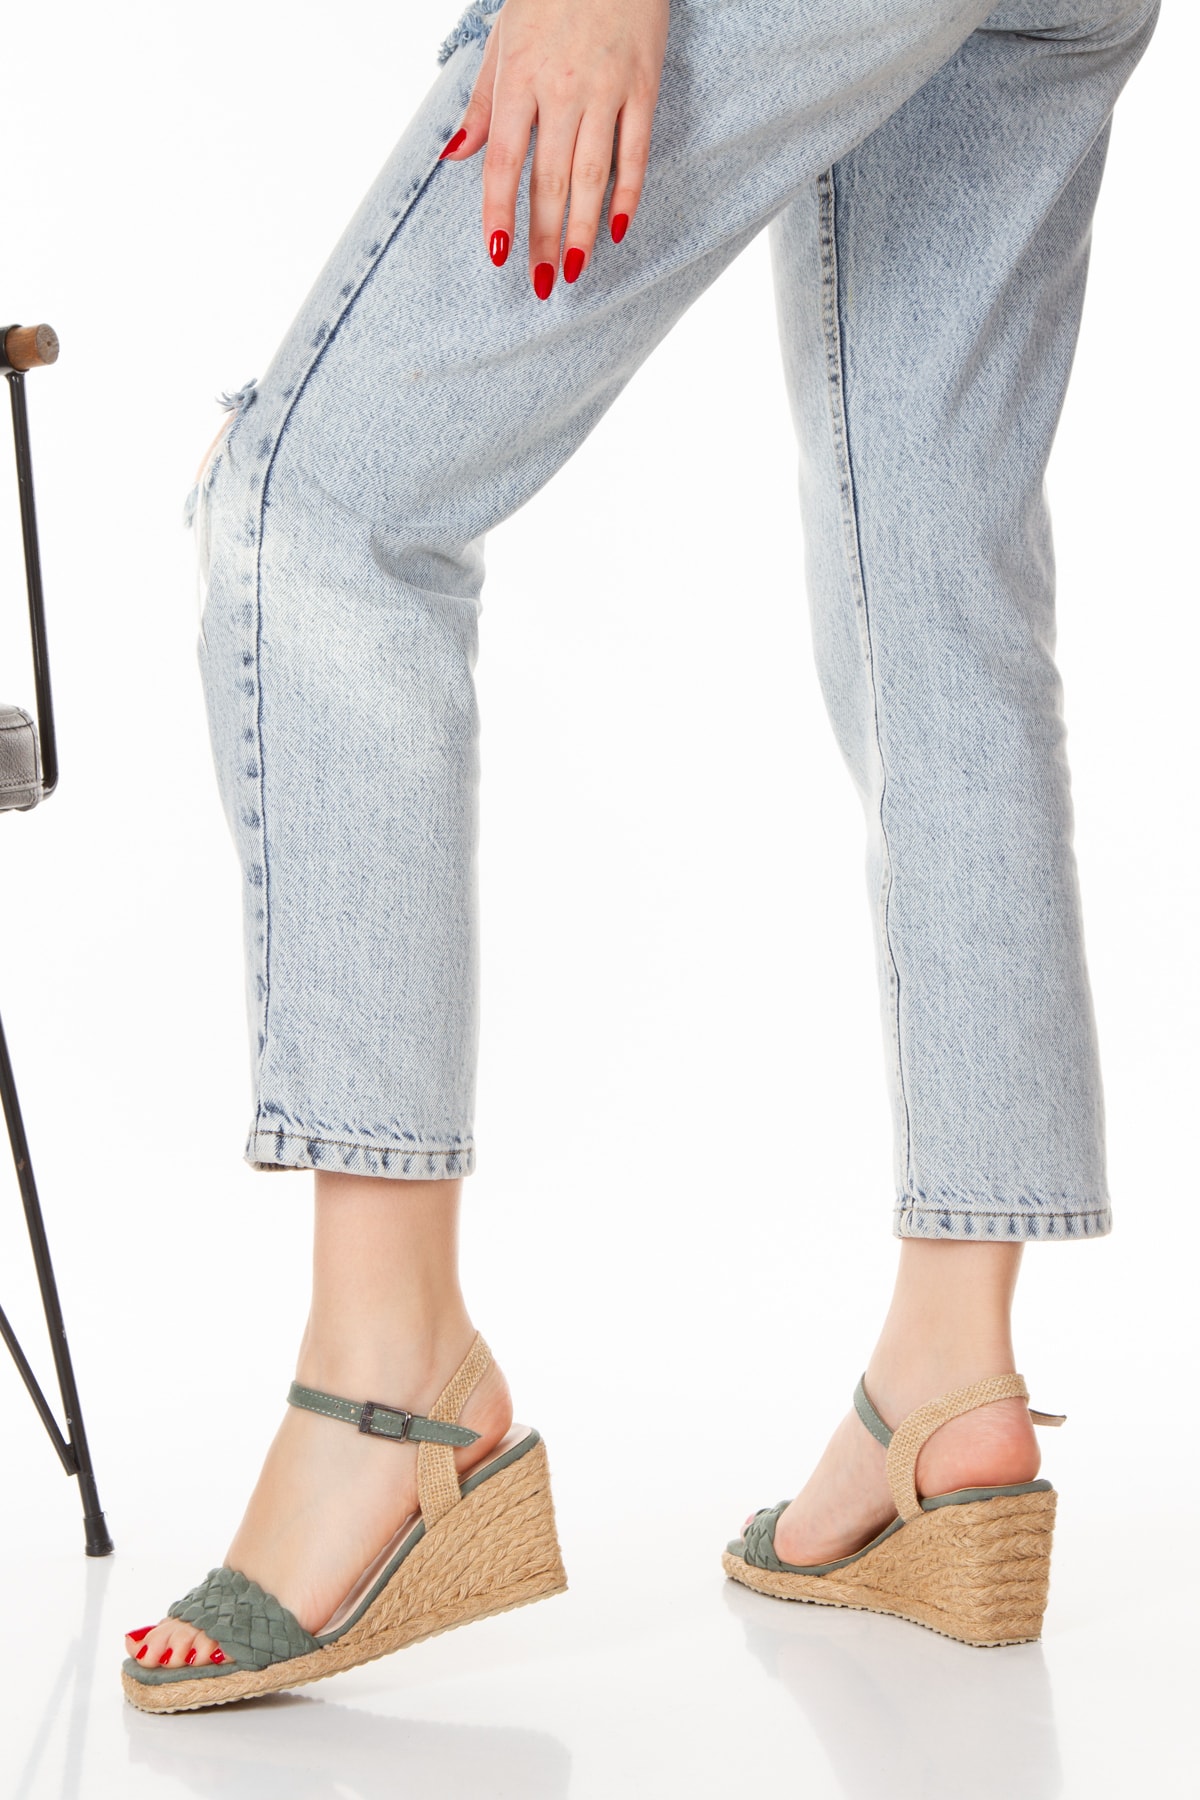 M&B COLLECT Dolgu Taban Hasır Sargı Günlük Kadın Sandalet